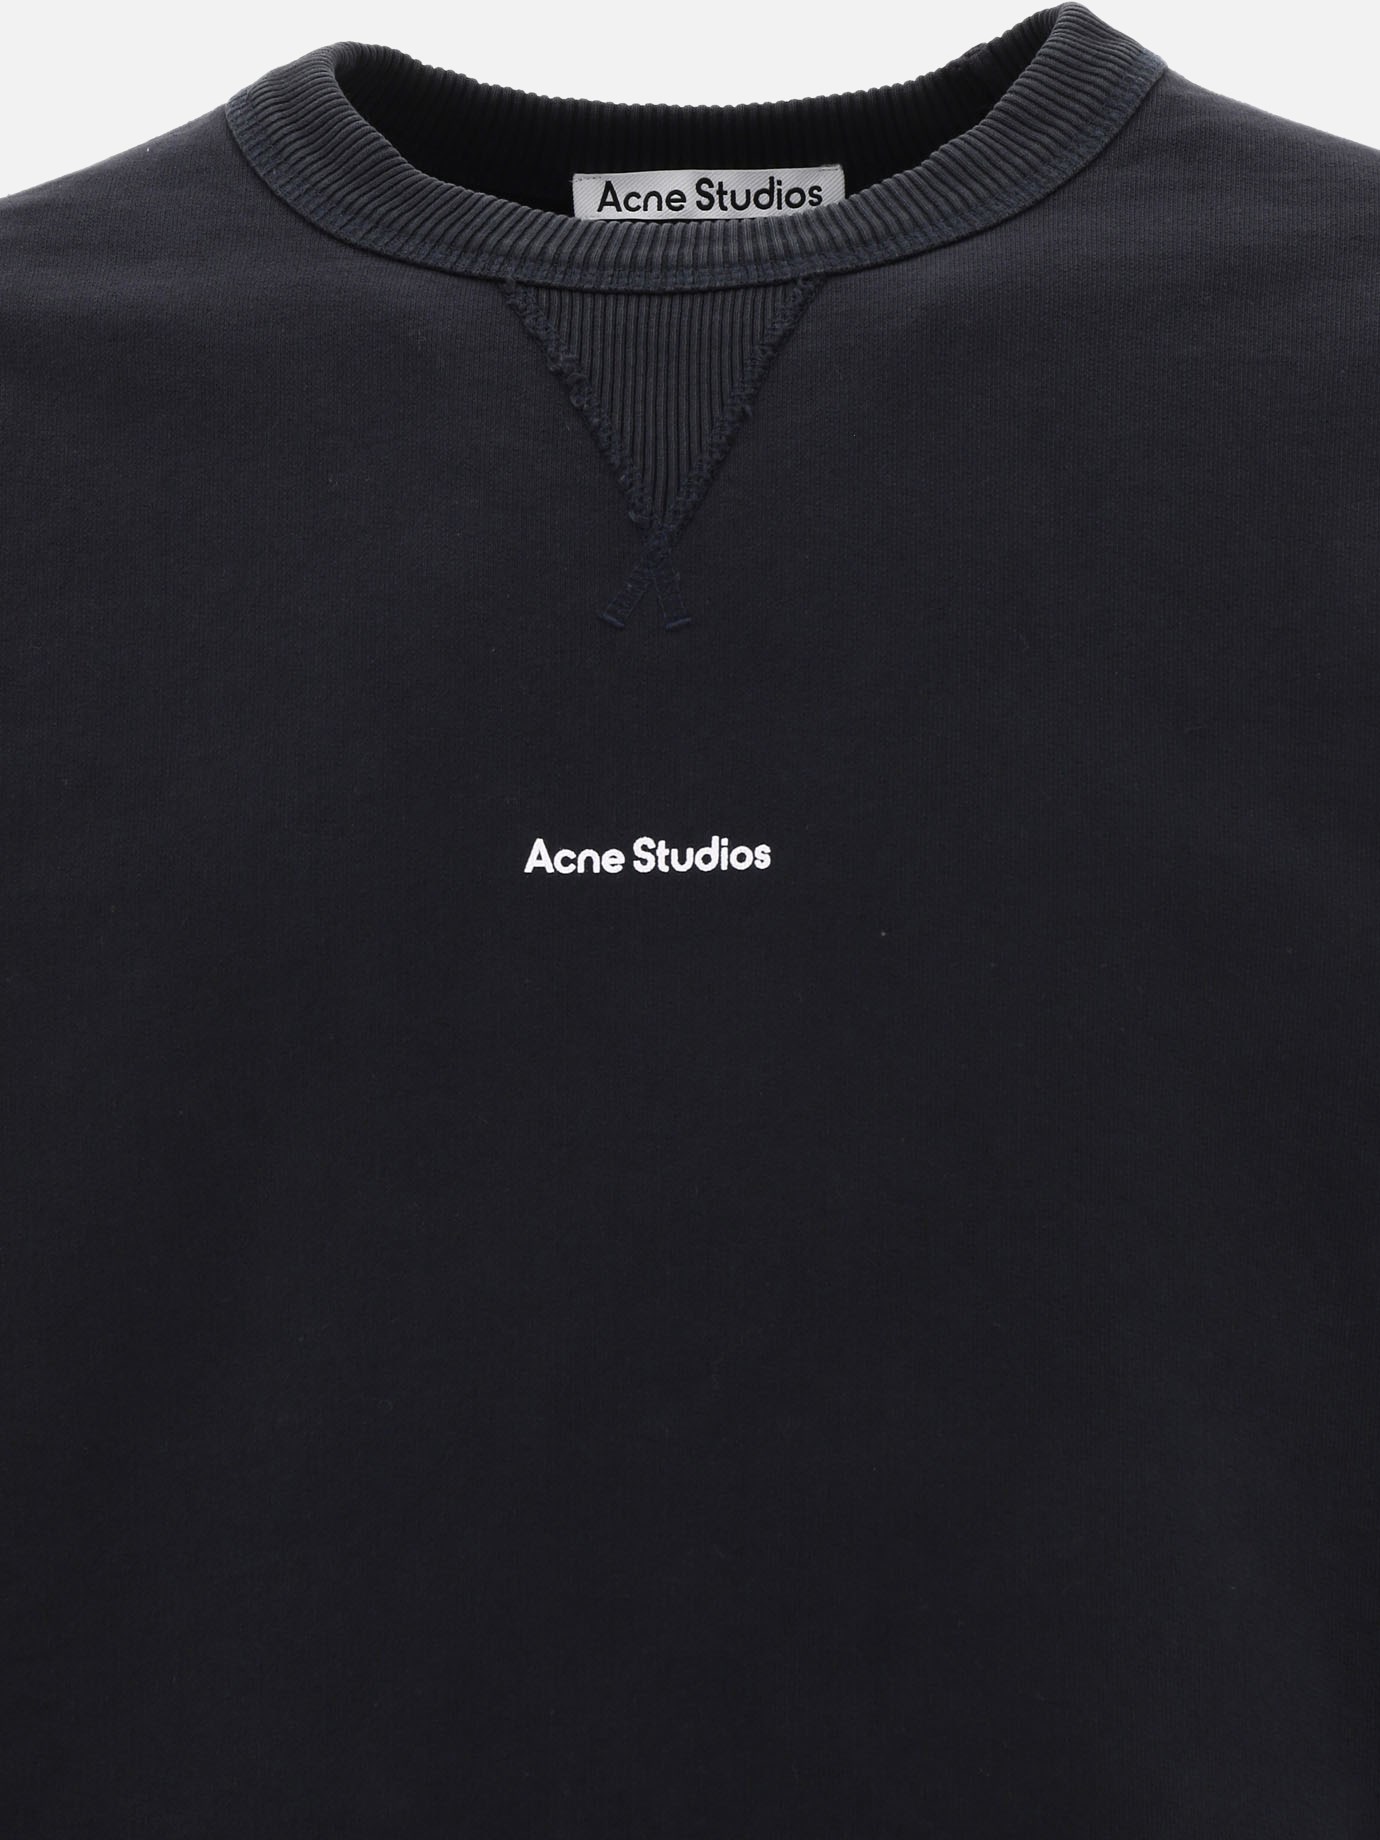  Acne Studios  sweatshirt by Acne Studios